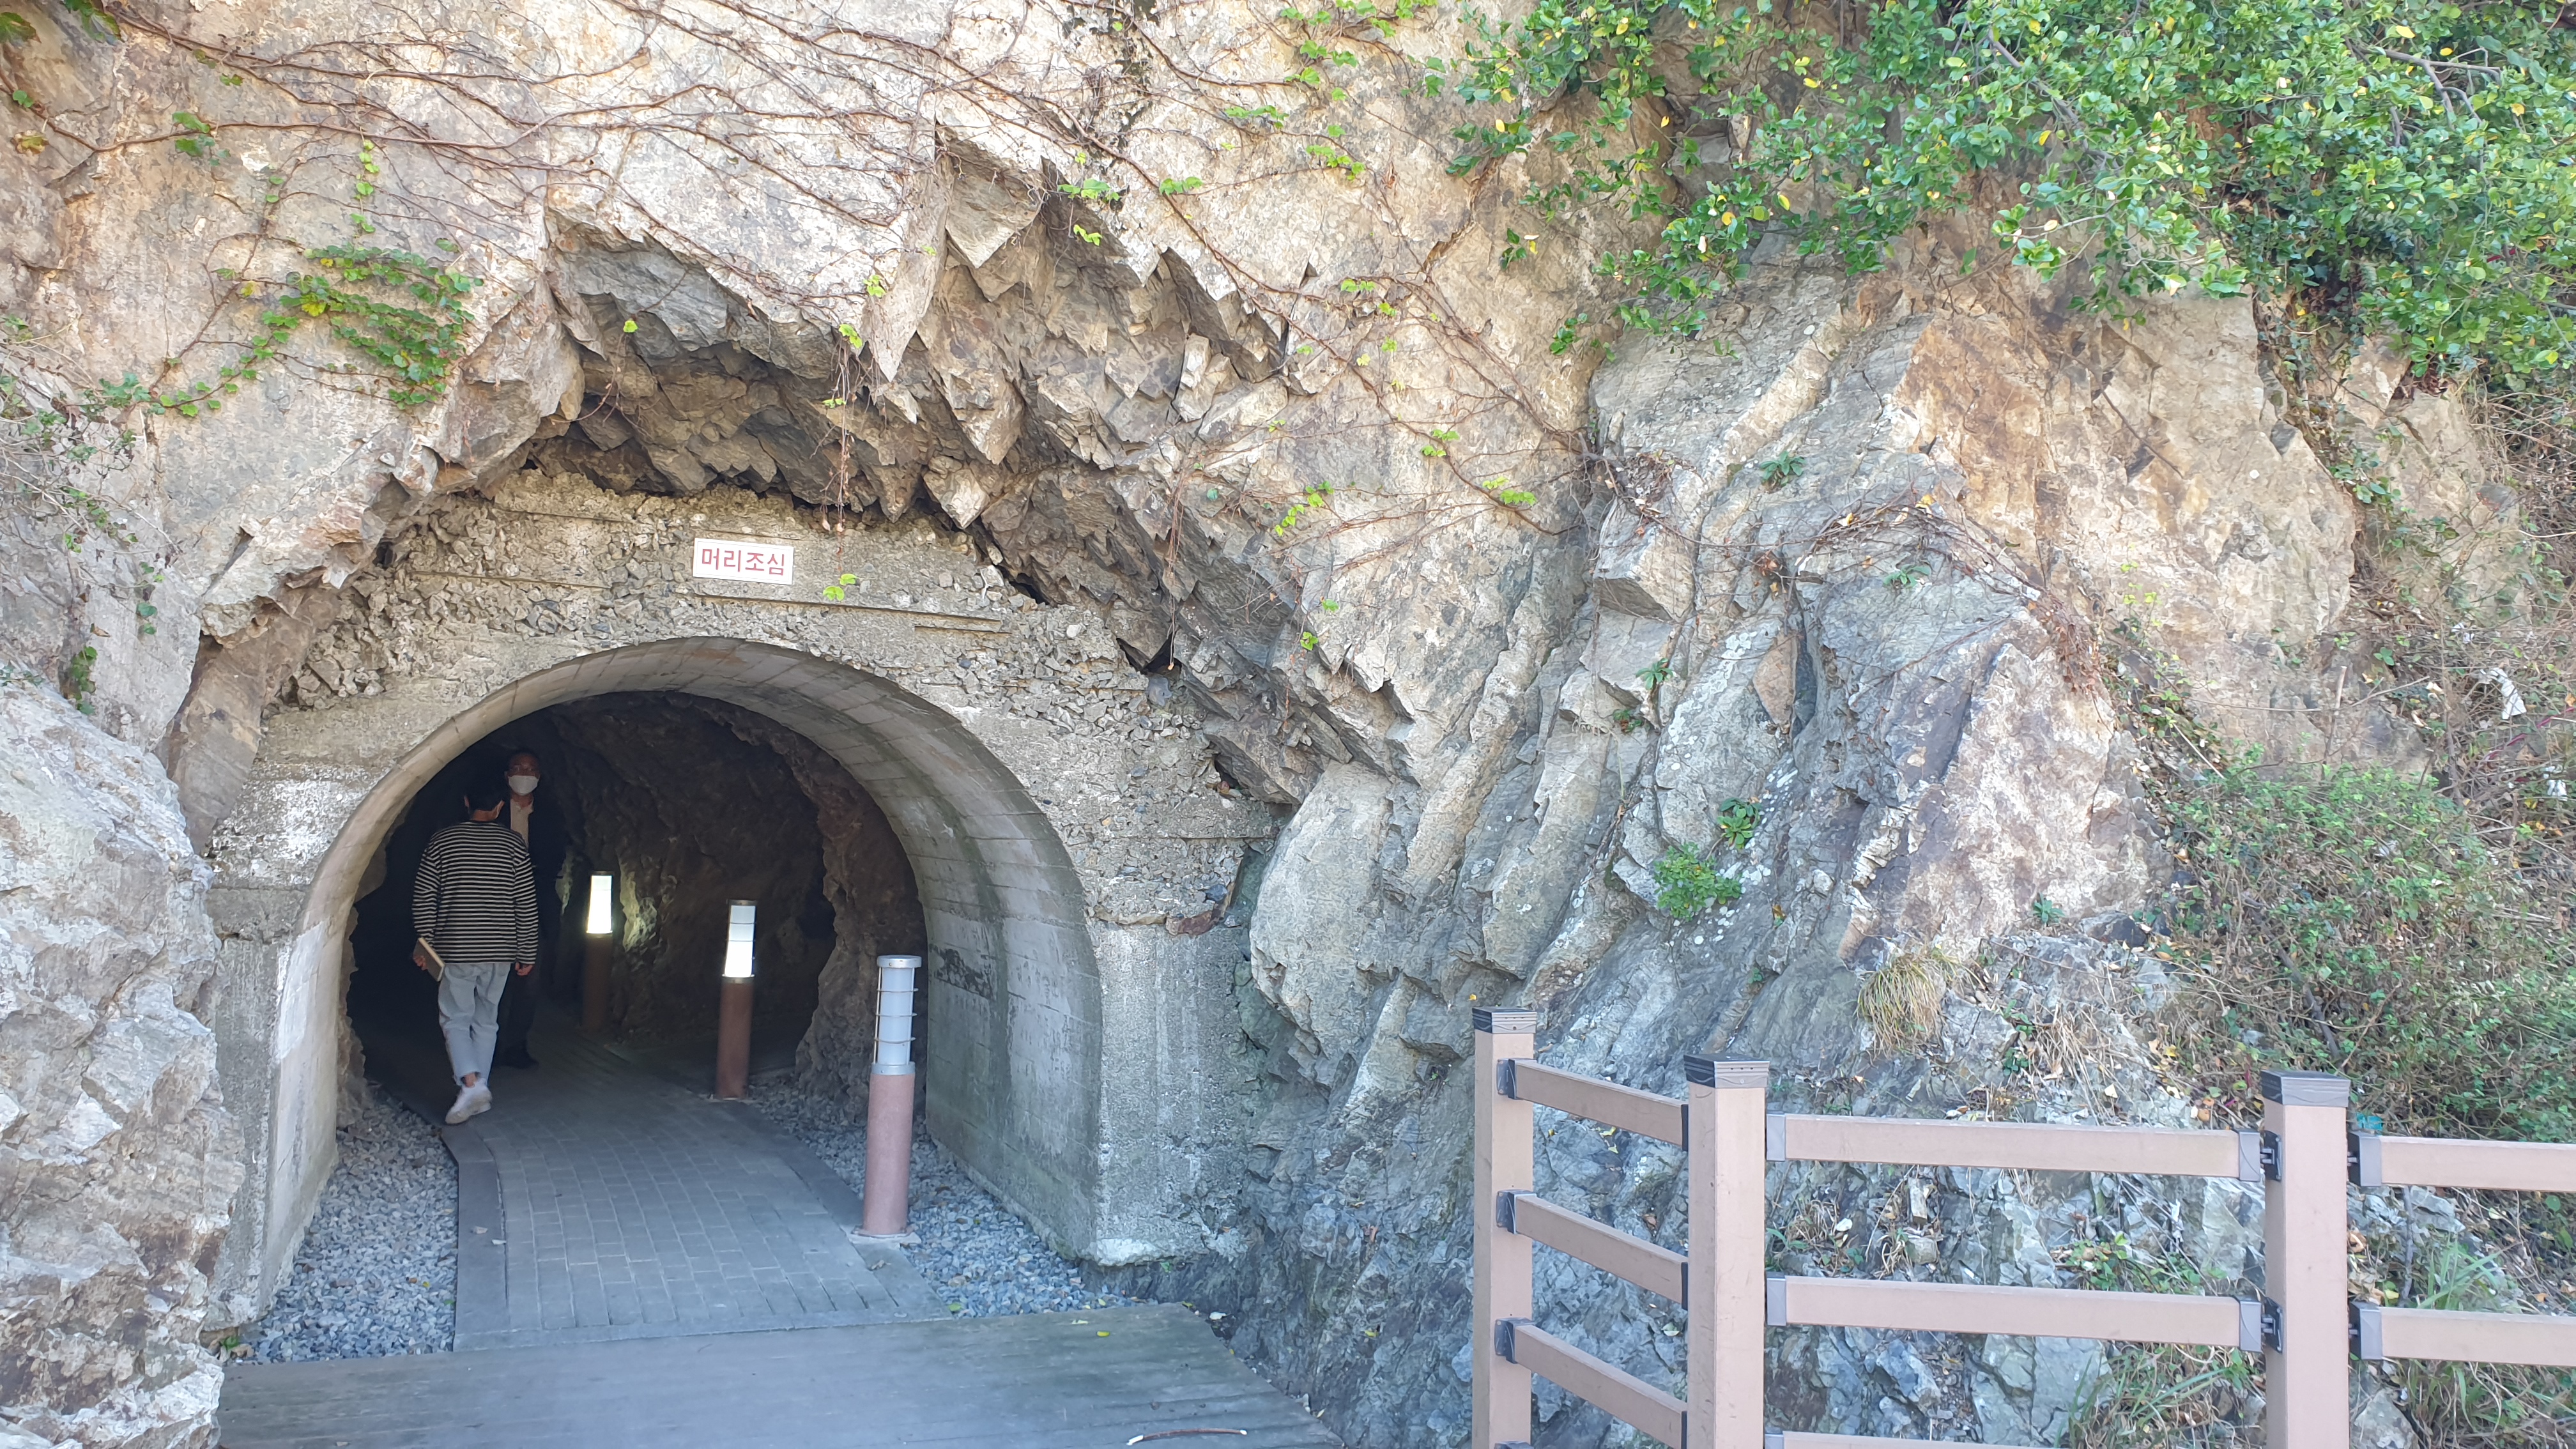 태평양전쟁 당시 일본군이 연합군 공습에 대비, 가덕도 해안 절벽에 만든 인공 동굴. 관측소, 대피소 등으로 활용하려고 만든 것으로 추정된다.